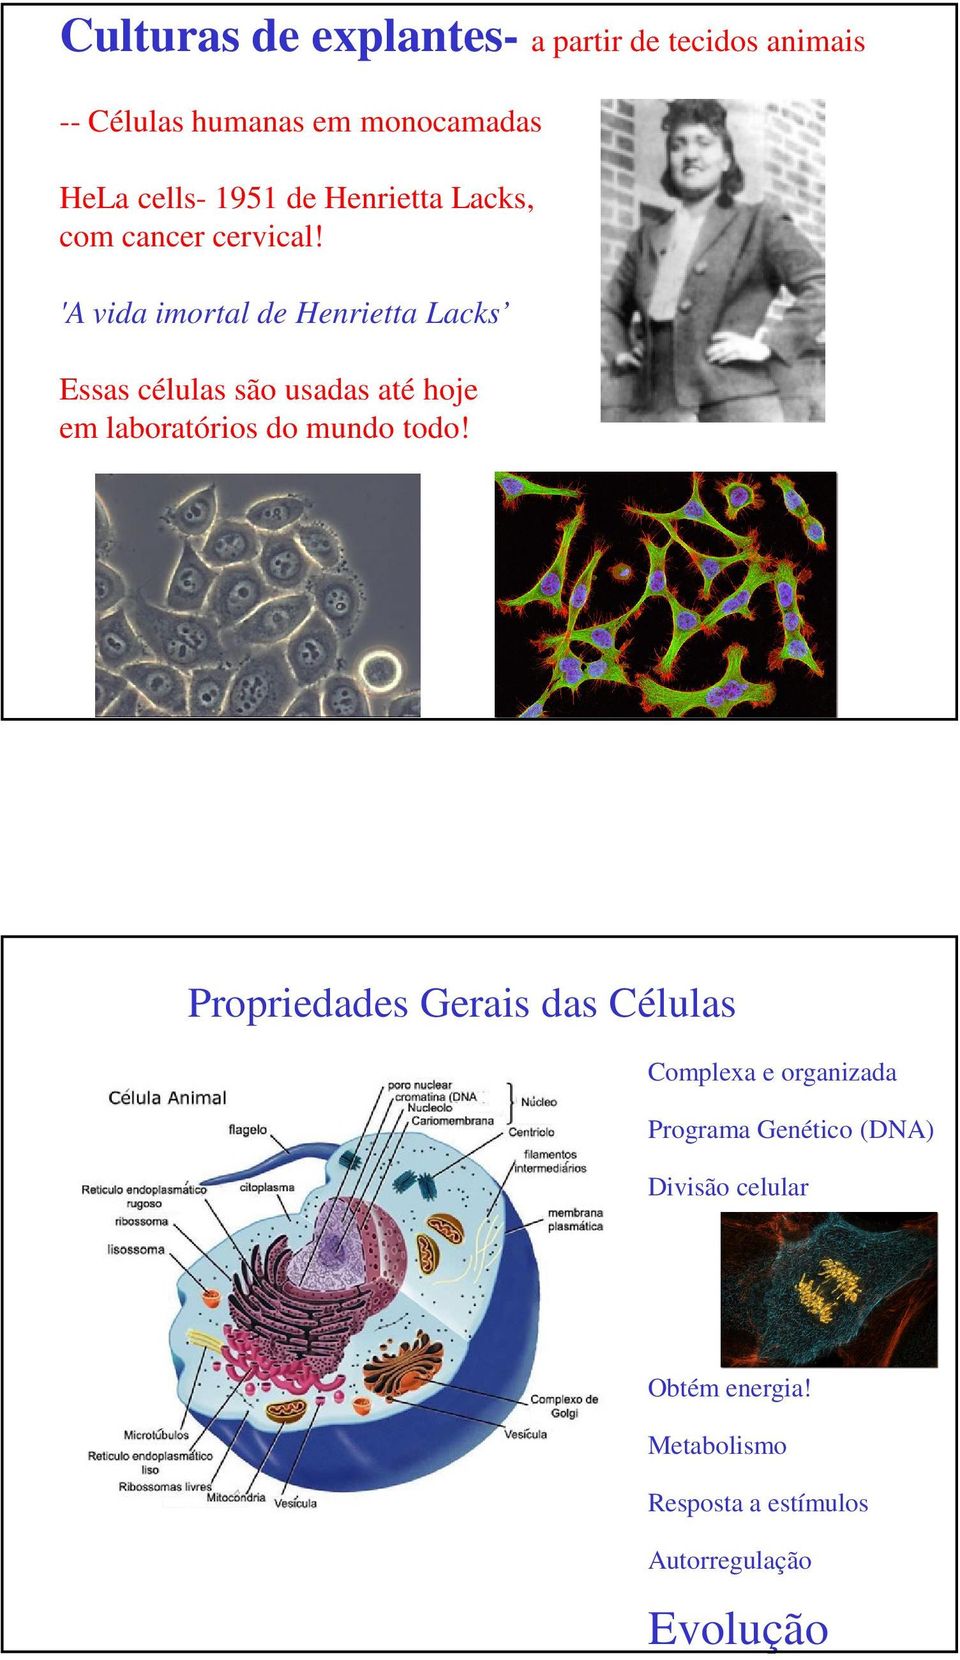 'A vida imortal de Henrietta Lacks Essas células são usadas até hoje em laboratórios do mundo todo!